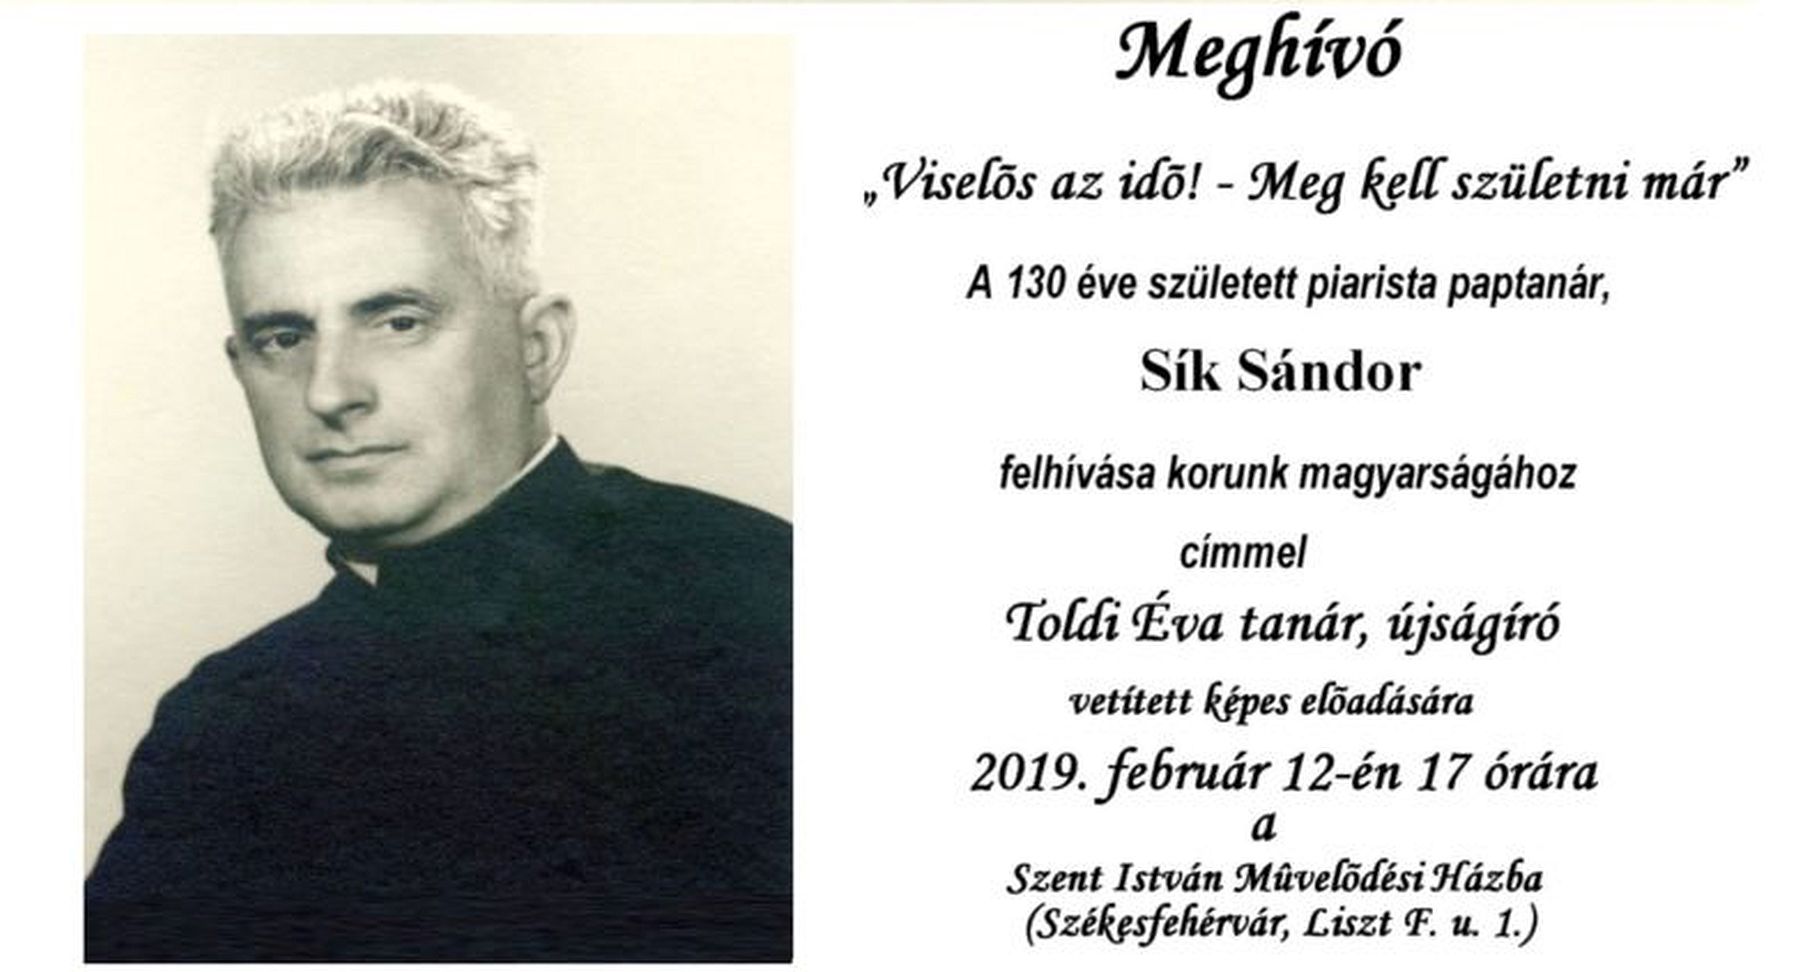 Toldi Éva előadása a 130 éve született Sík Sándor költő, piarista paptanár emlékére